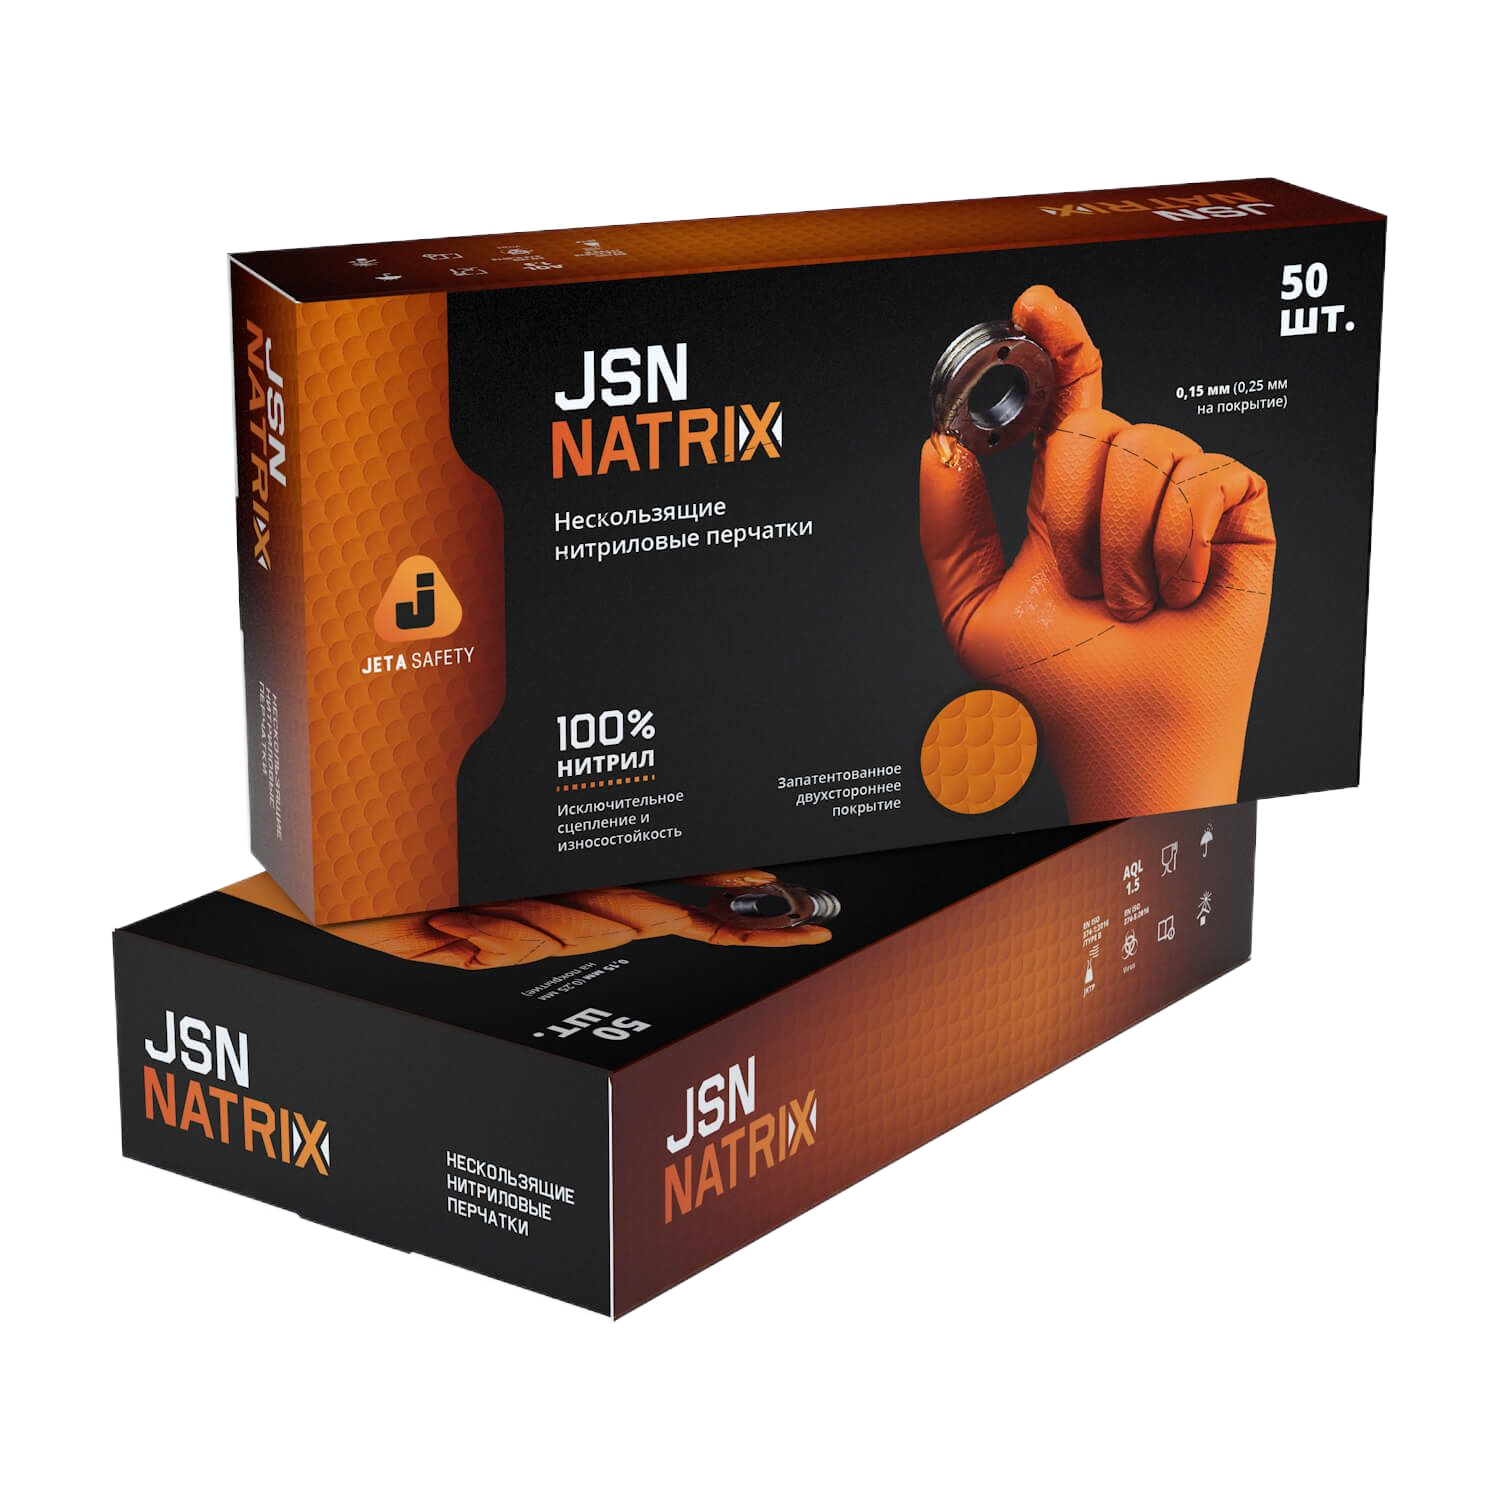 JSN 50 NATRIX OR08/M Перчатки нескользящие одноразовые JETA Safety оранжевые нитриловые размер M. Цена за 1 шт